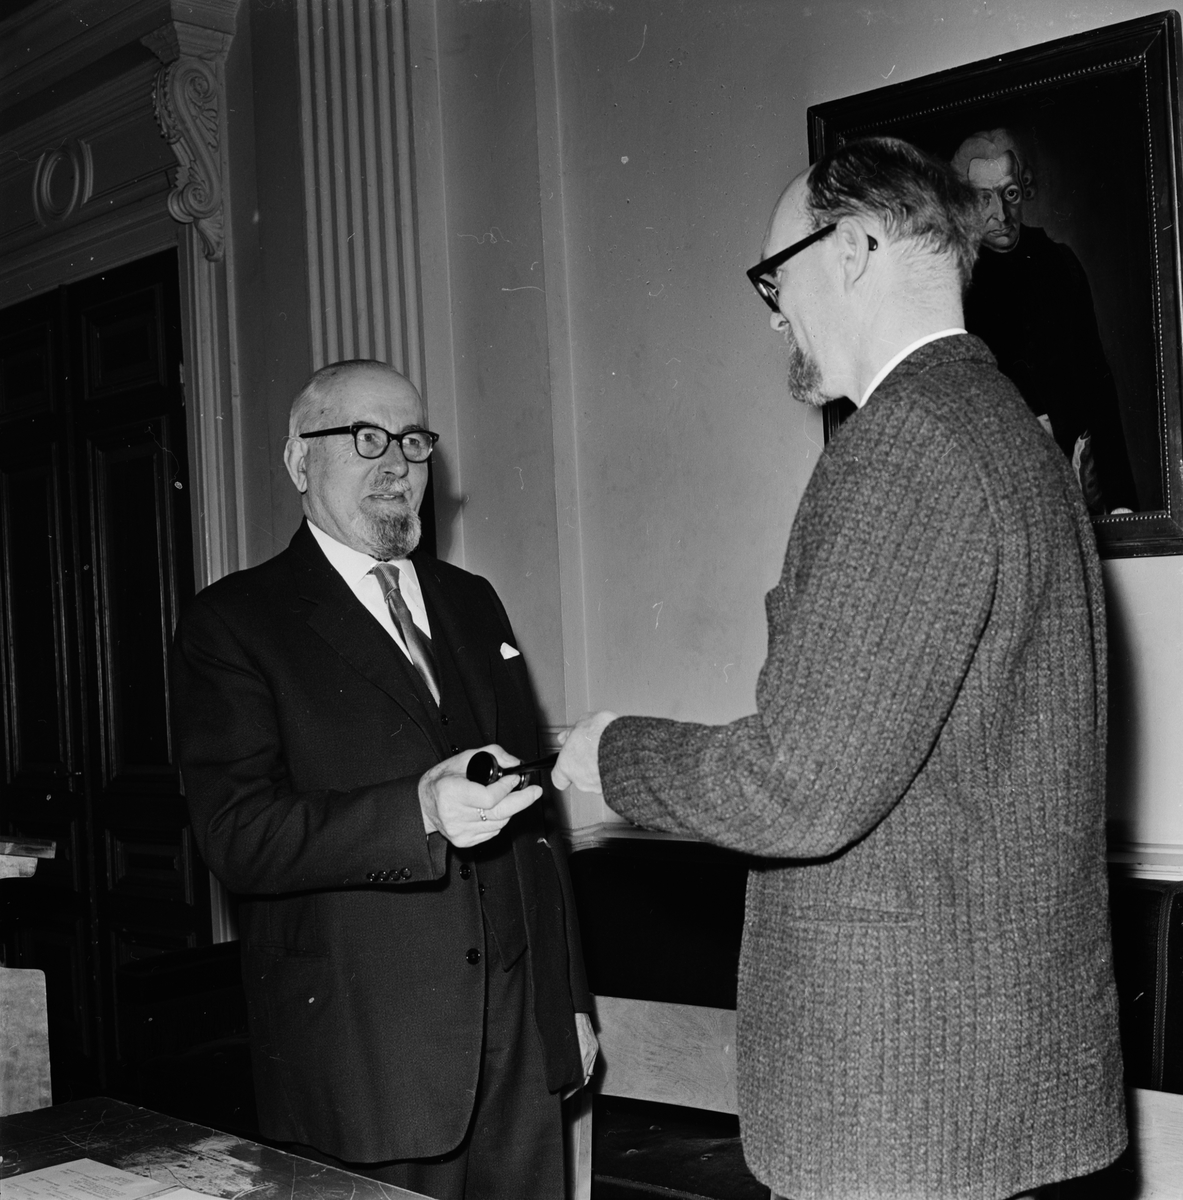 Uppsala Trädgårdssällskap - nya ordföranden Helmuth Wanderoy  tar emot ordförandeklubban av Pehr Boierth, sannolikt Uppsala mars 1965